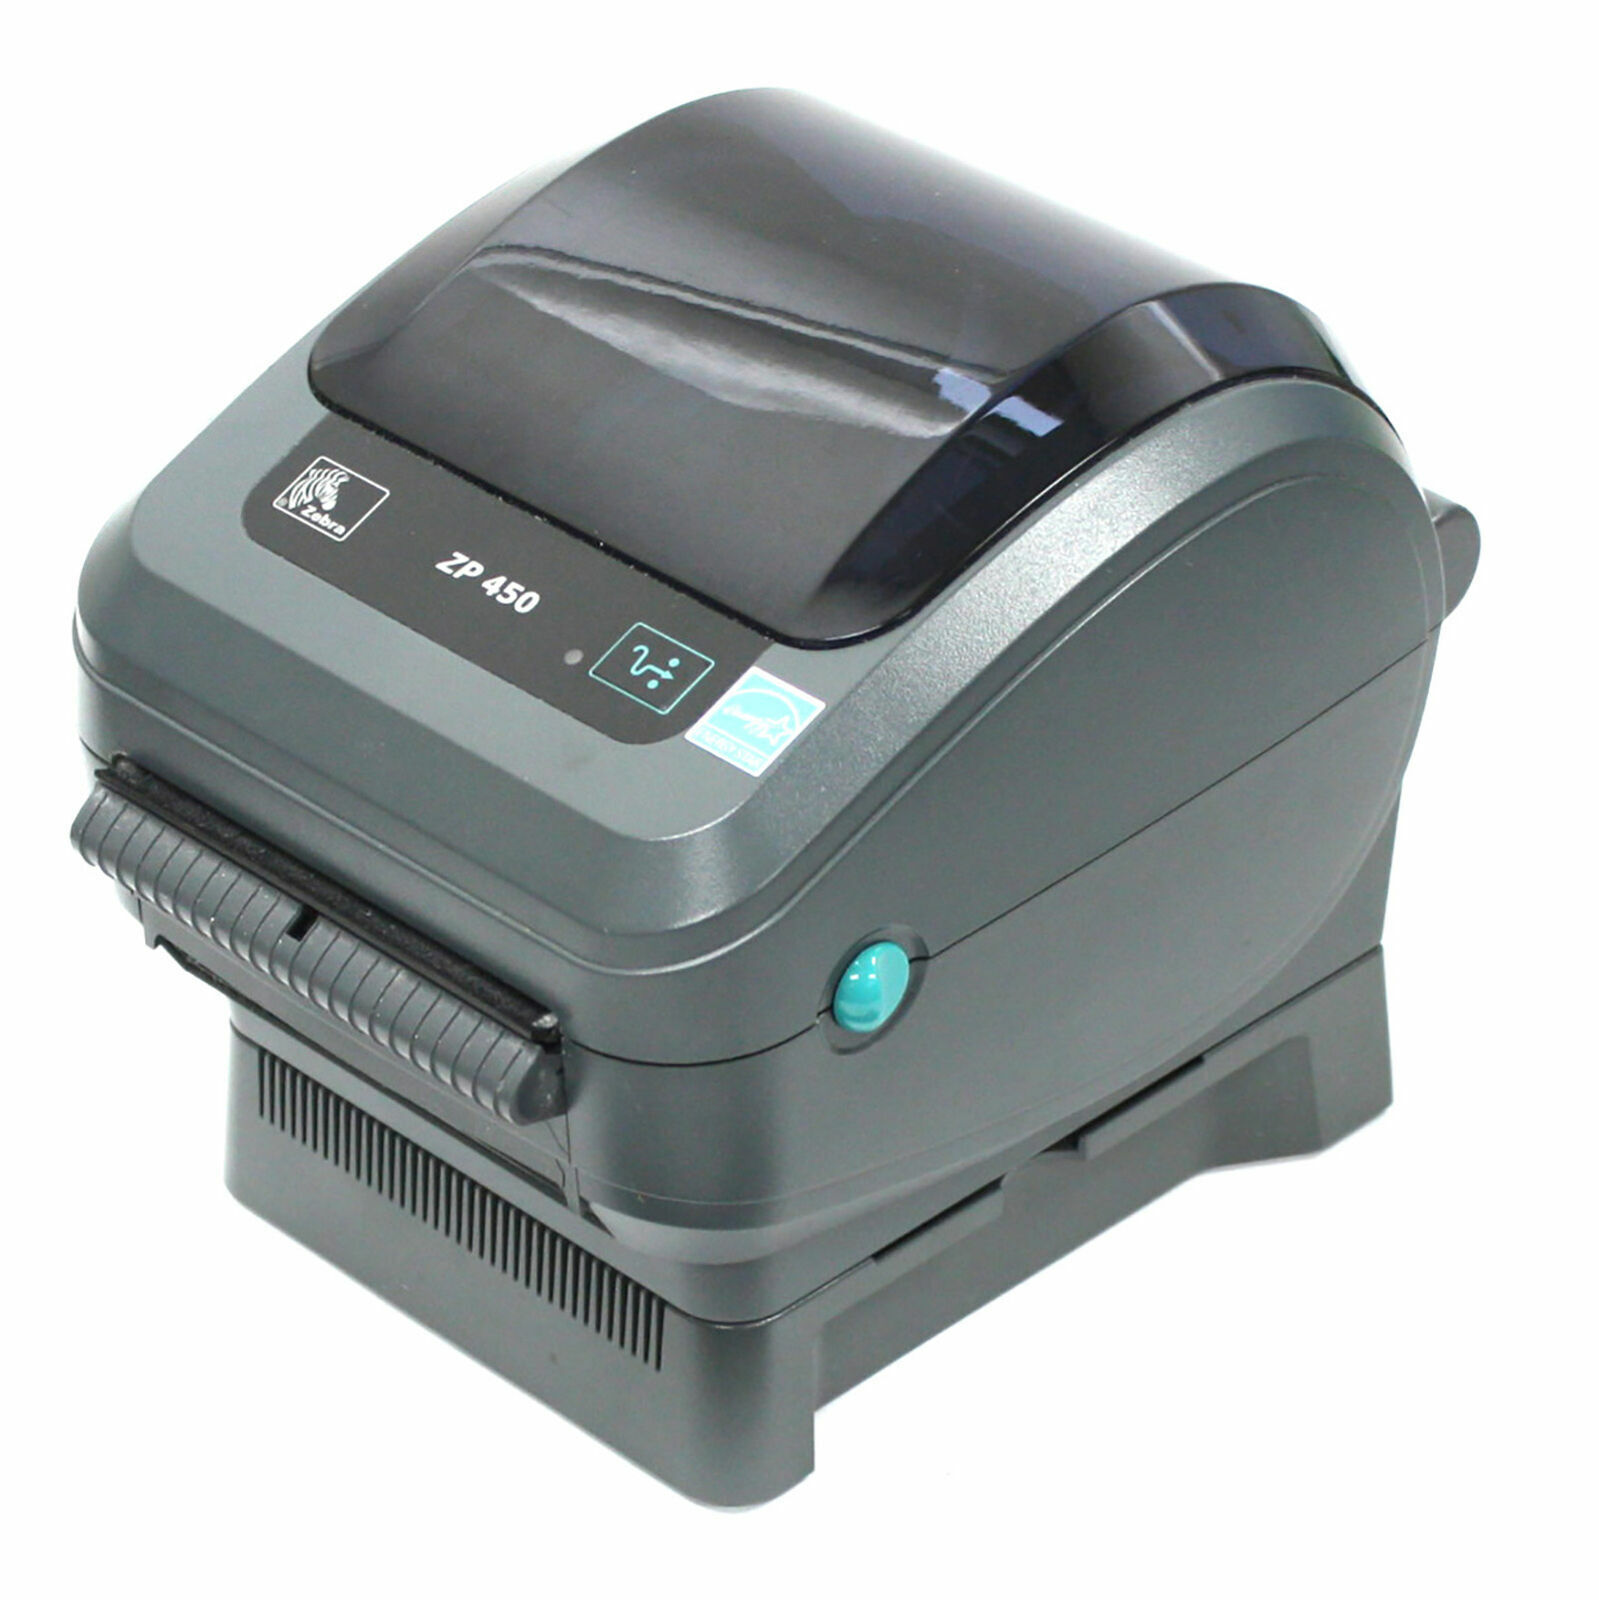 Zebra ZP450 -0502-0004 UPS CTP Label Thermal Printer - BRAND NEW 